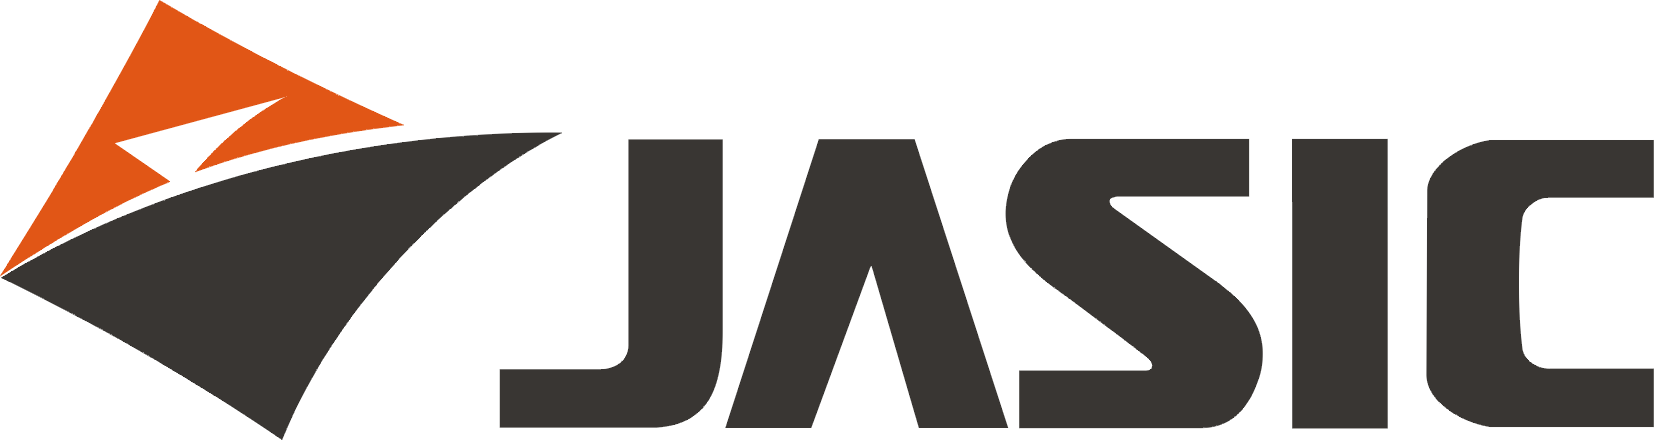 JASIC - Kategorie produktů